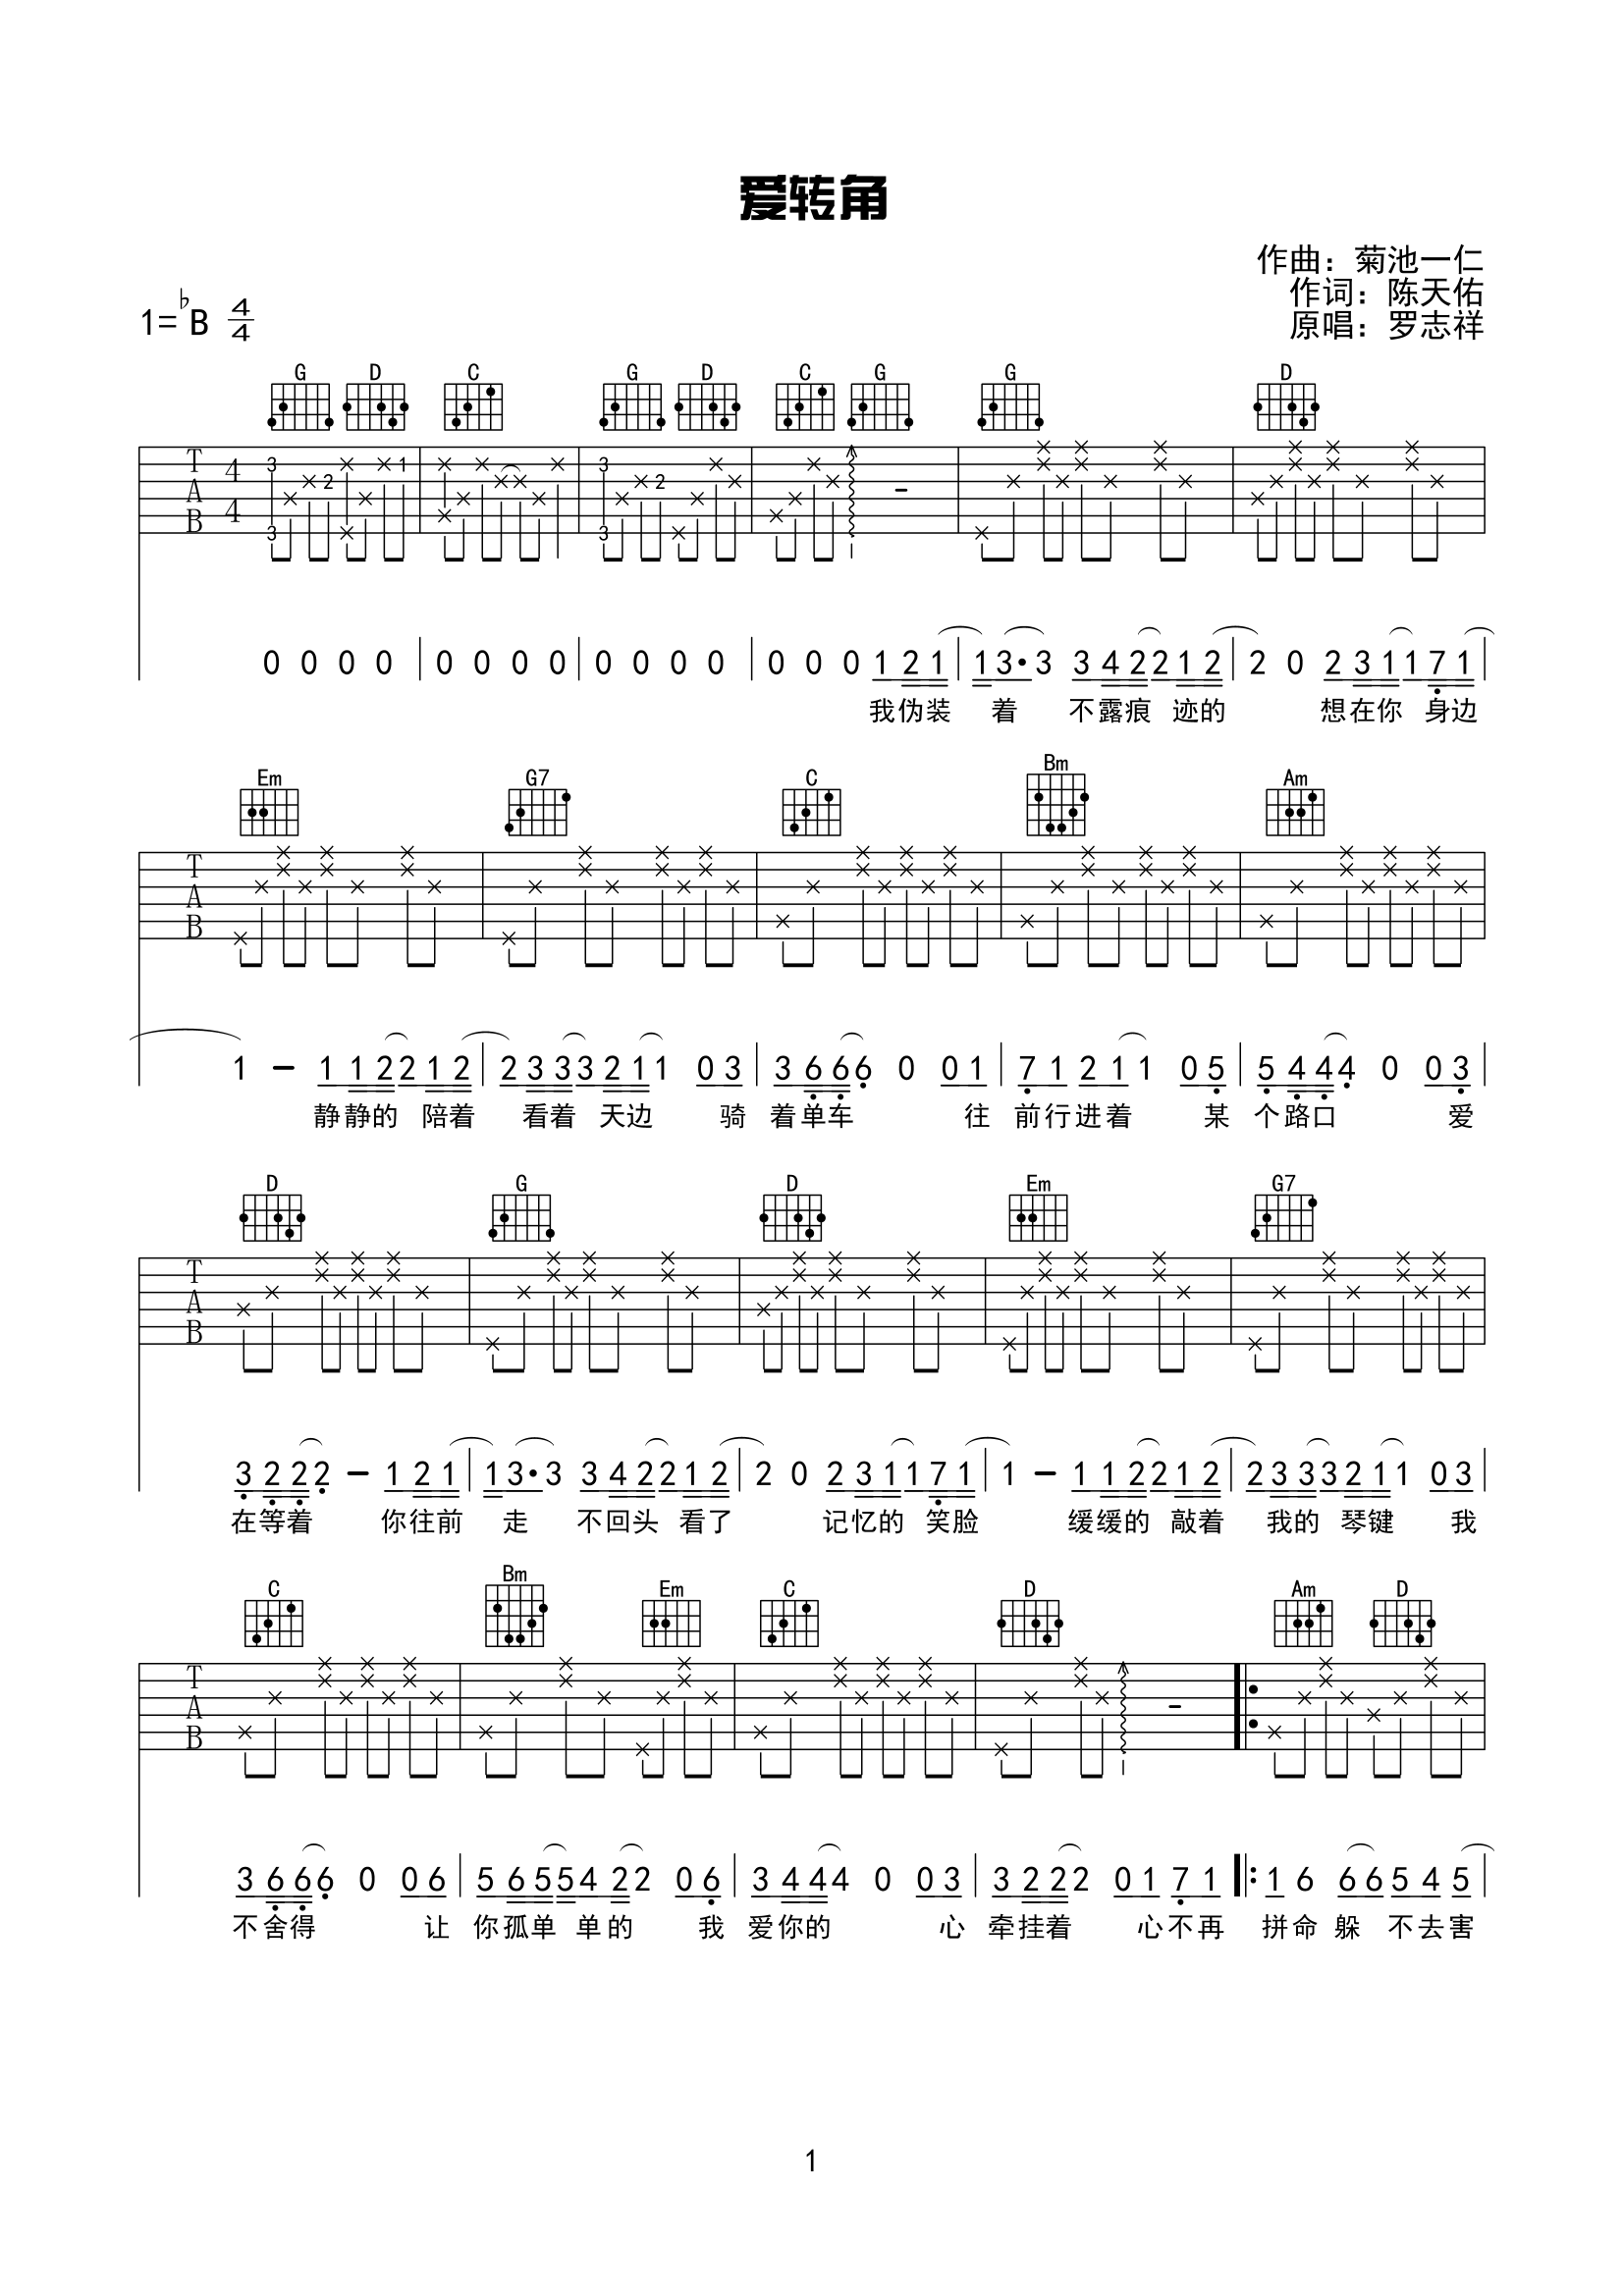 罗志祥成名曲吉他谱《爱转角》-吉他曲谱 - 乐器学习网